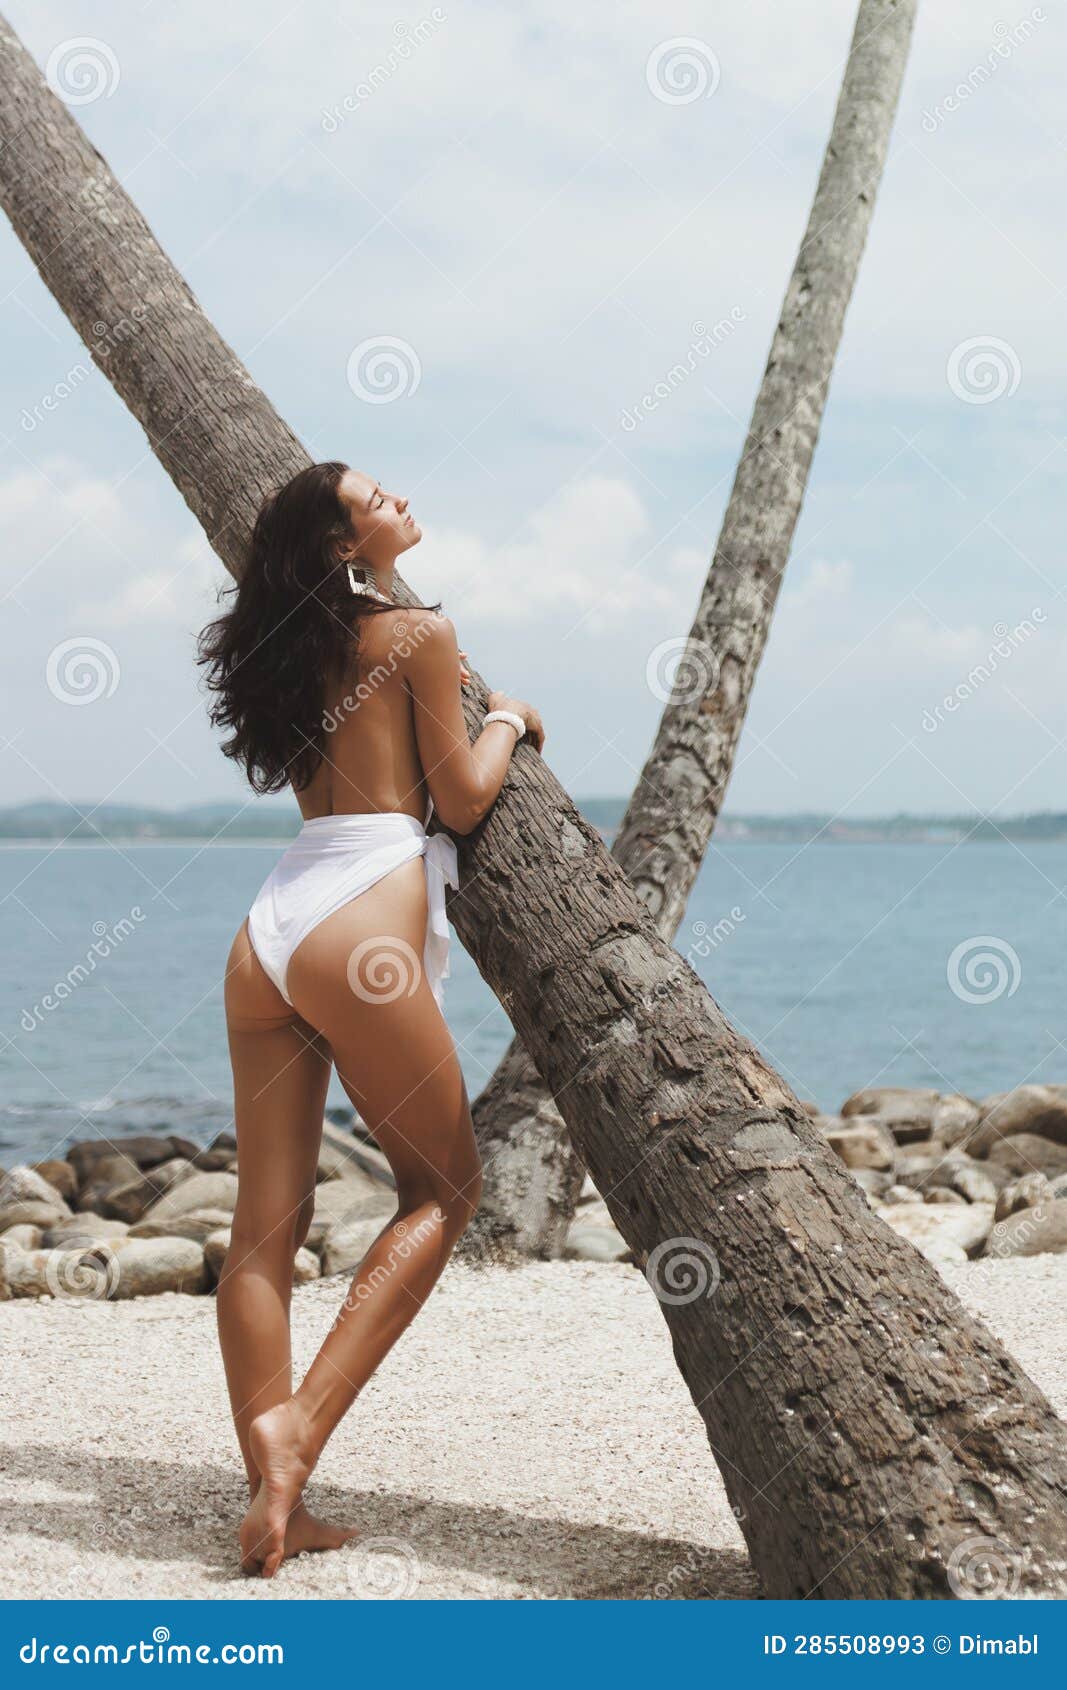 https://thumbs.dreamstime.com/z/vacaciones-de-lujo-en-el-para%C3%ADso-la-moda-playera-chica-ropa-ba%C3%B1o-blanca-y-elegante-modelo-playa-mujer-multirracial-con-cuerpo-285508993.jpg